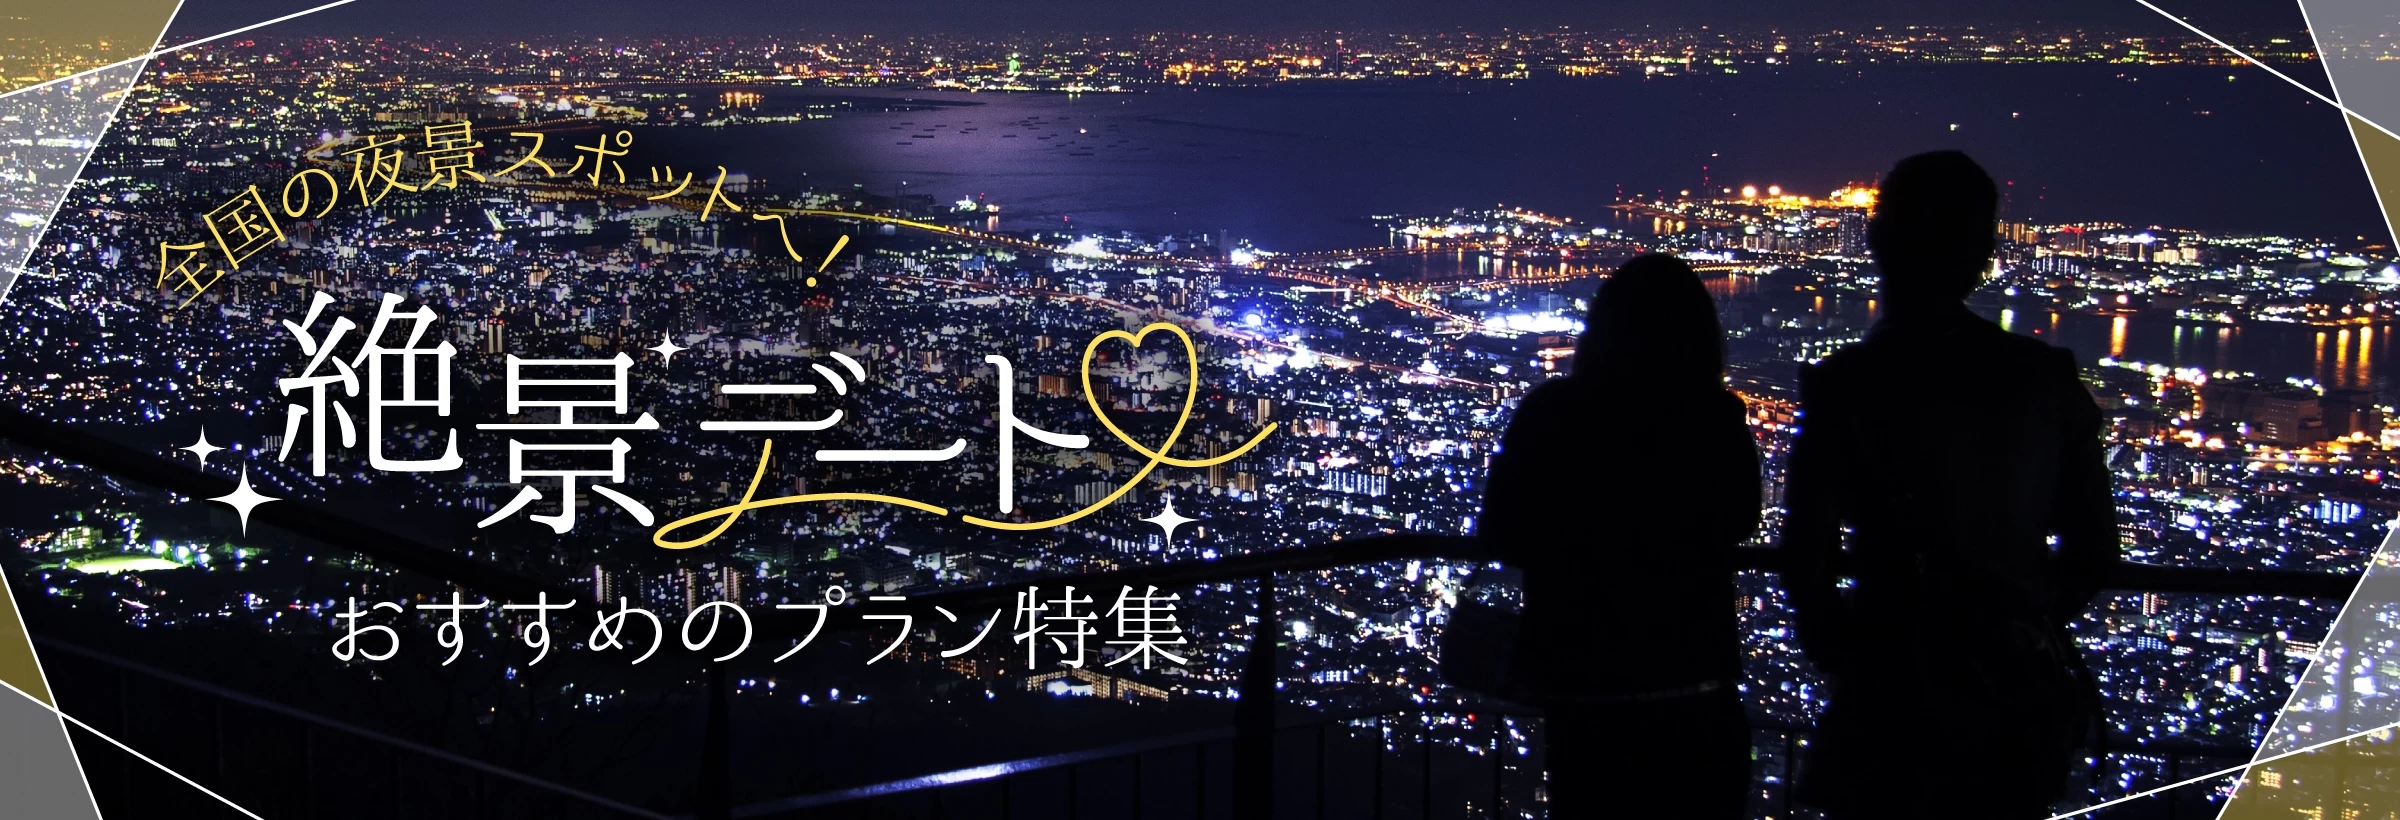 夜景デートにおすすめのプランを集めました！ 日本には、美しい夜景スポットが全国に点在しています。「日本三大夜景」や「新日本三大夜景」といわれる名所もご紹介。宝石のように輝く夜景を眺めながら、おふたりでロマンチックなひと時をお過ごしください。